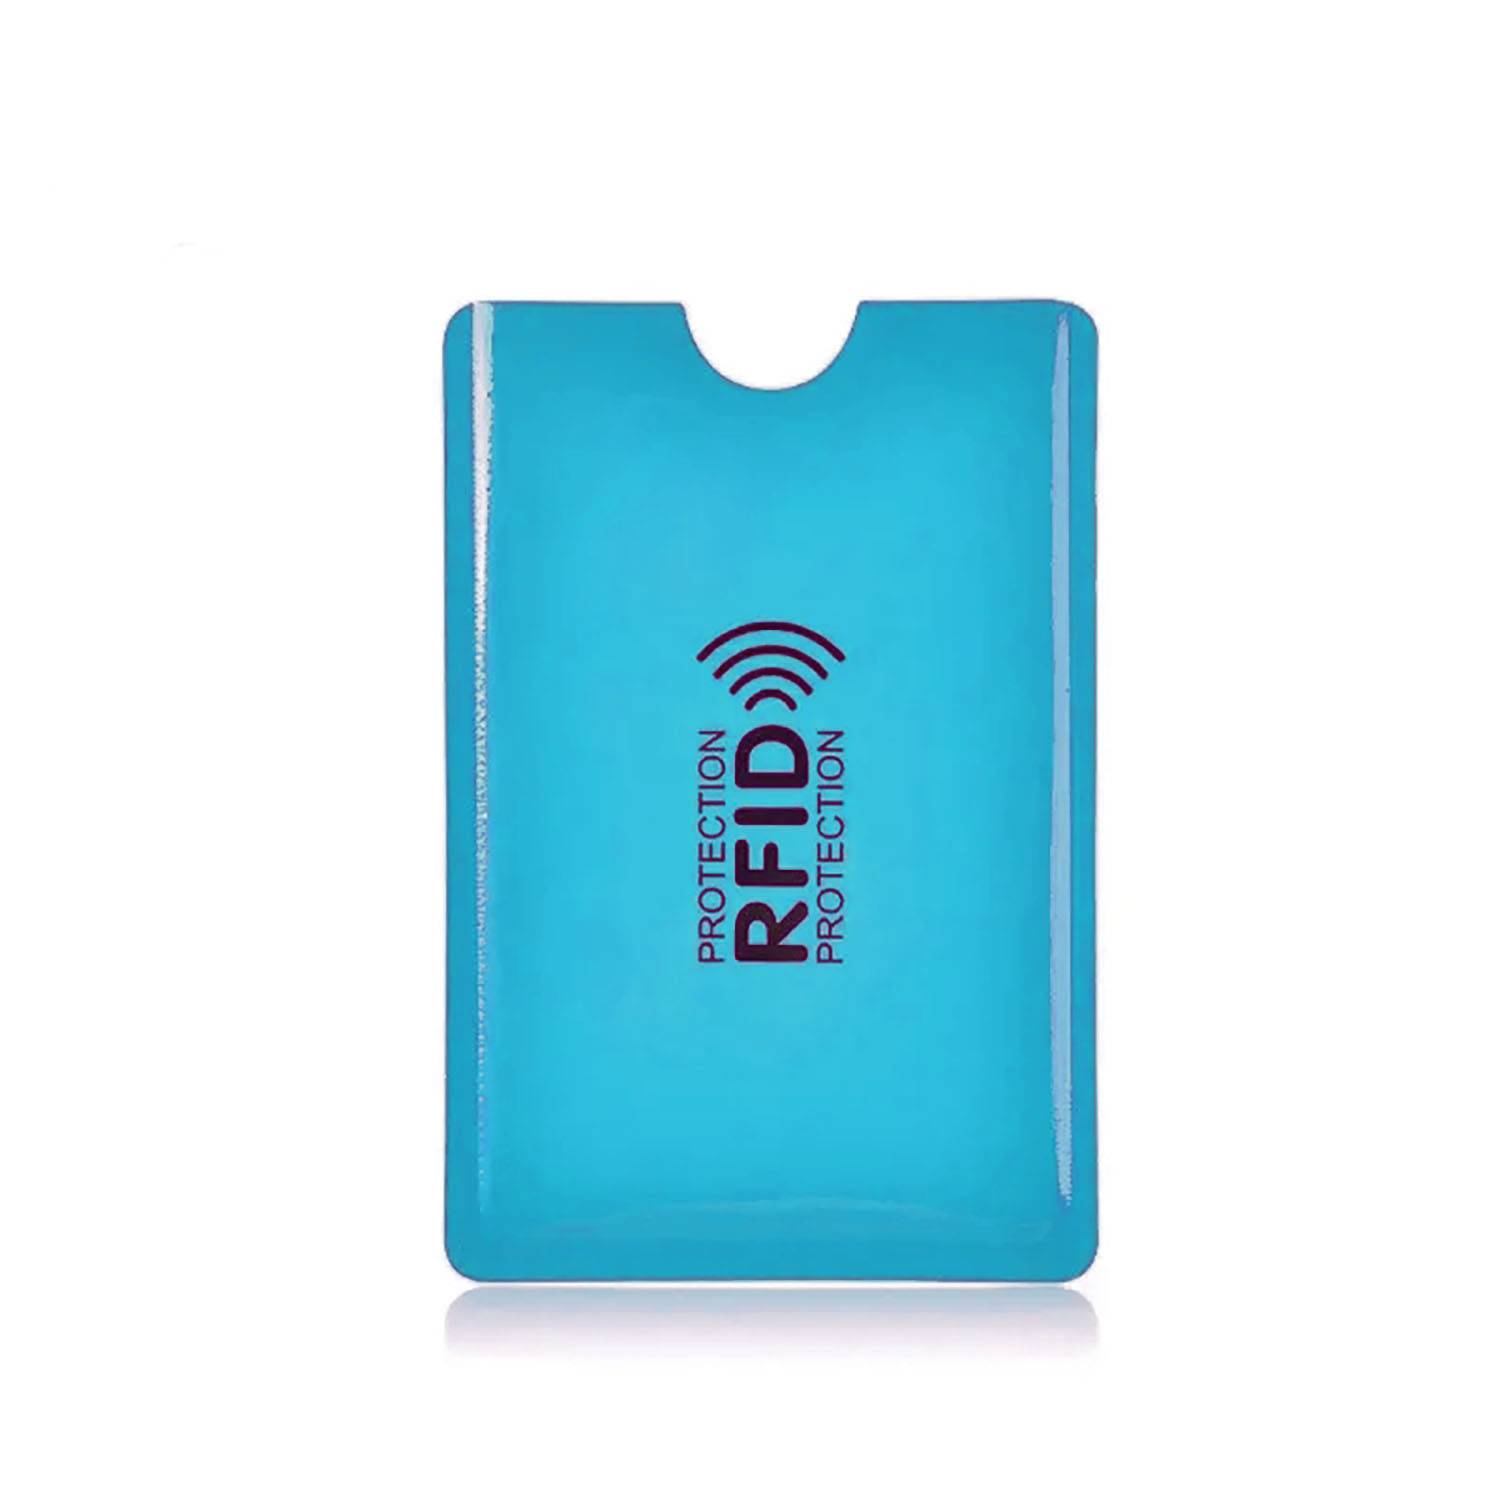 Funda Protectora de Tarjeta Crédito RFID Antirobo Pack 3 Piezas Azul  GENERICO